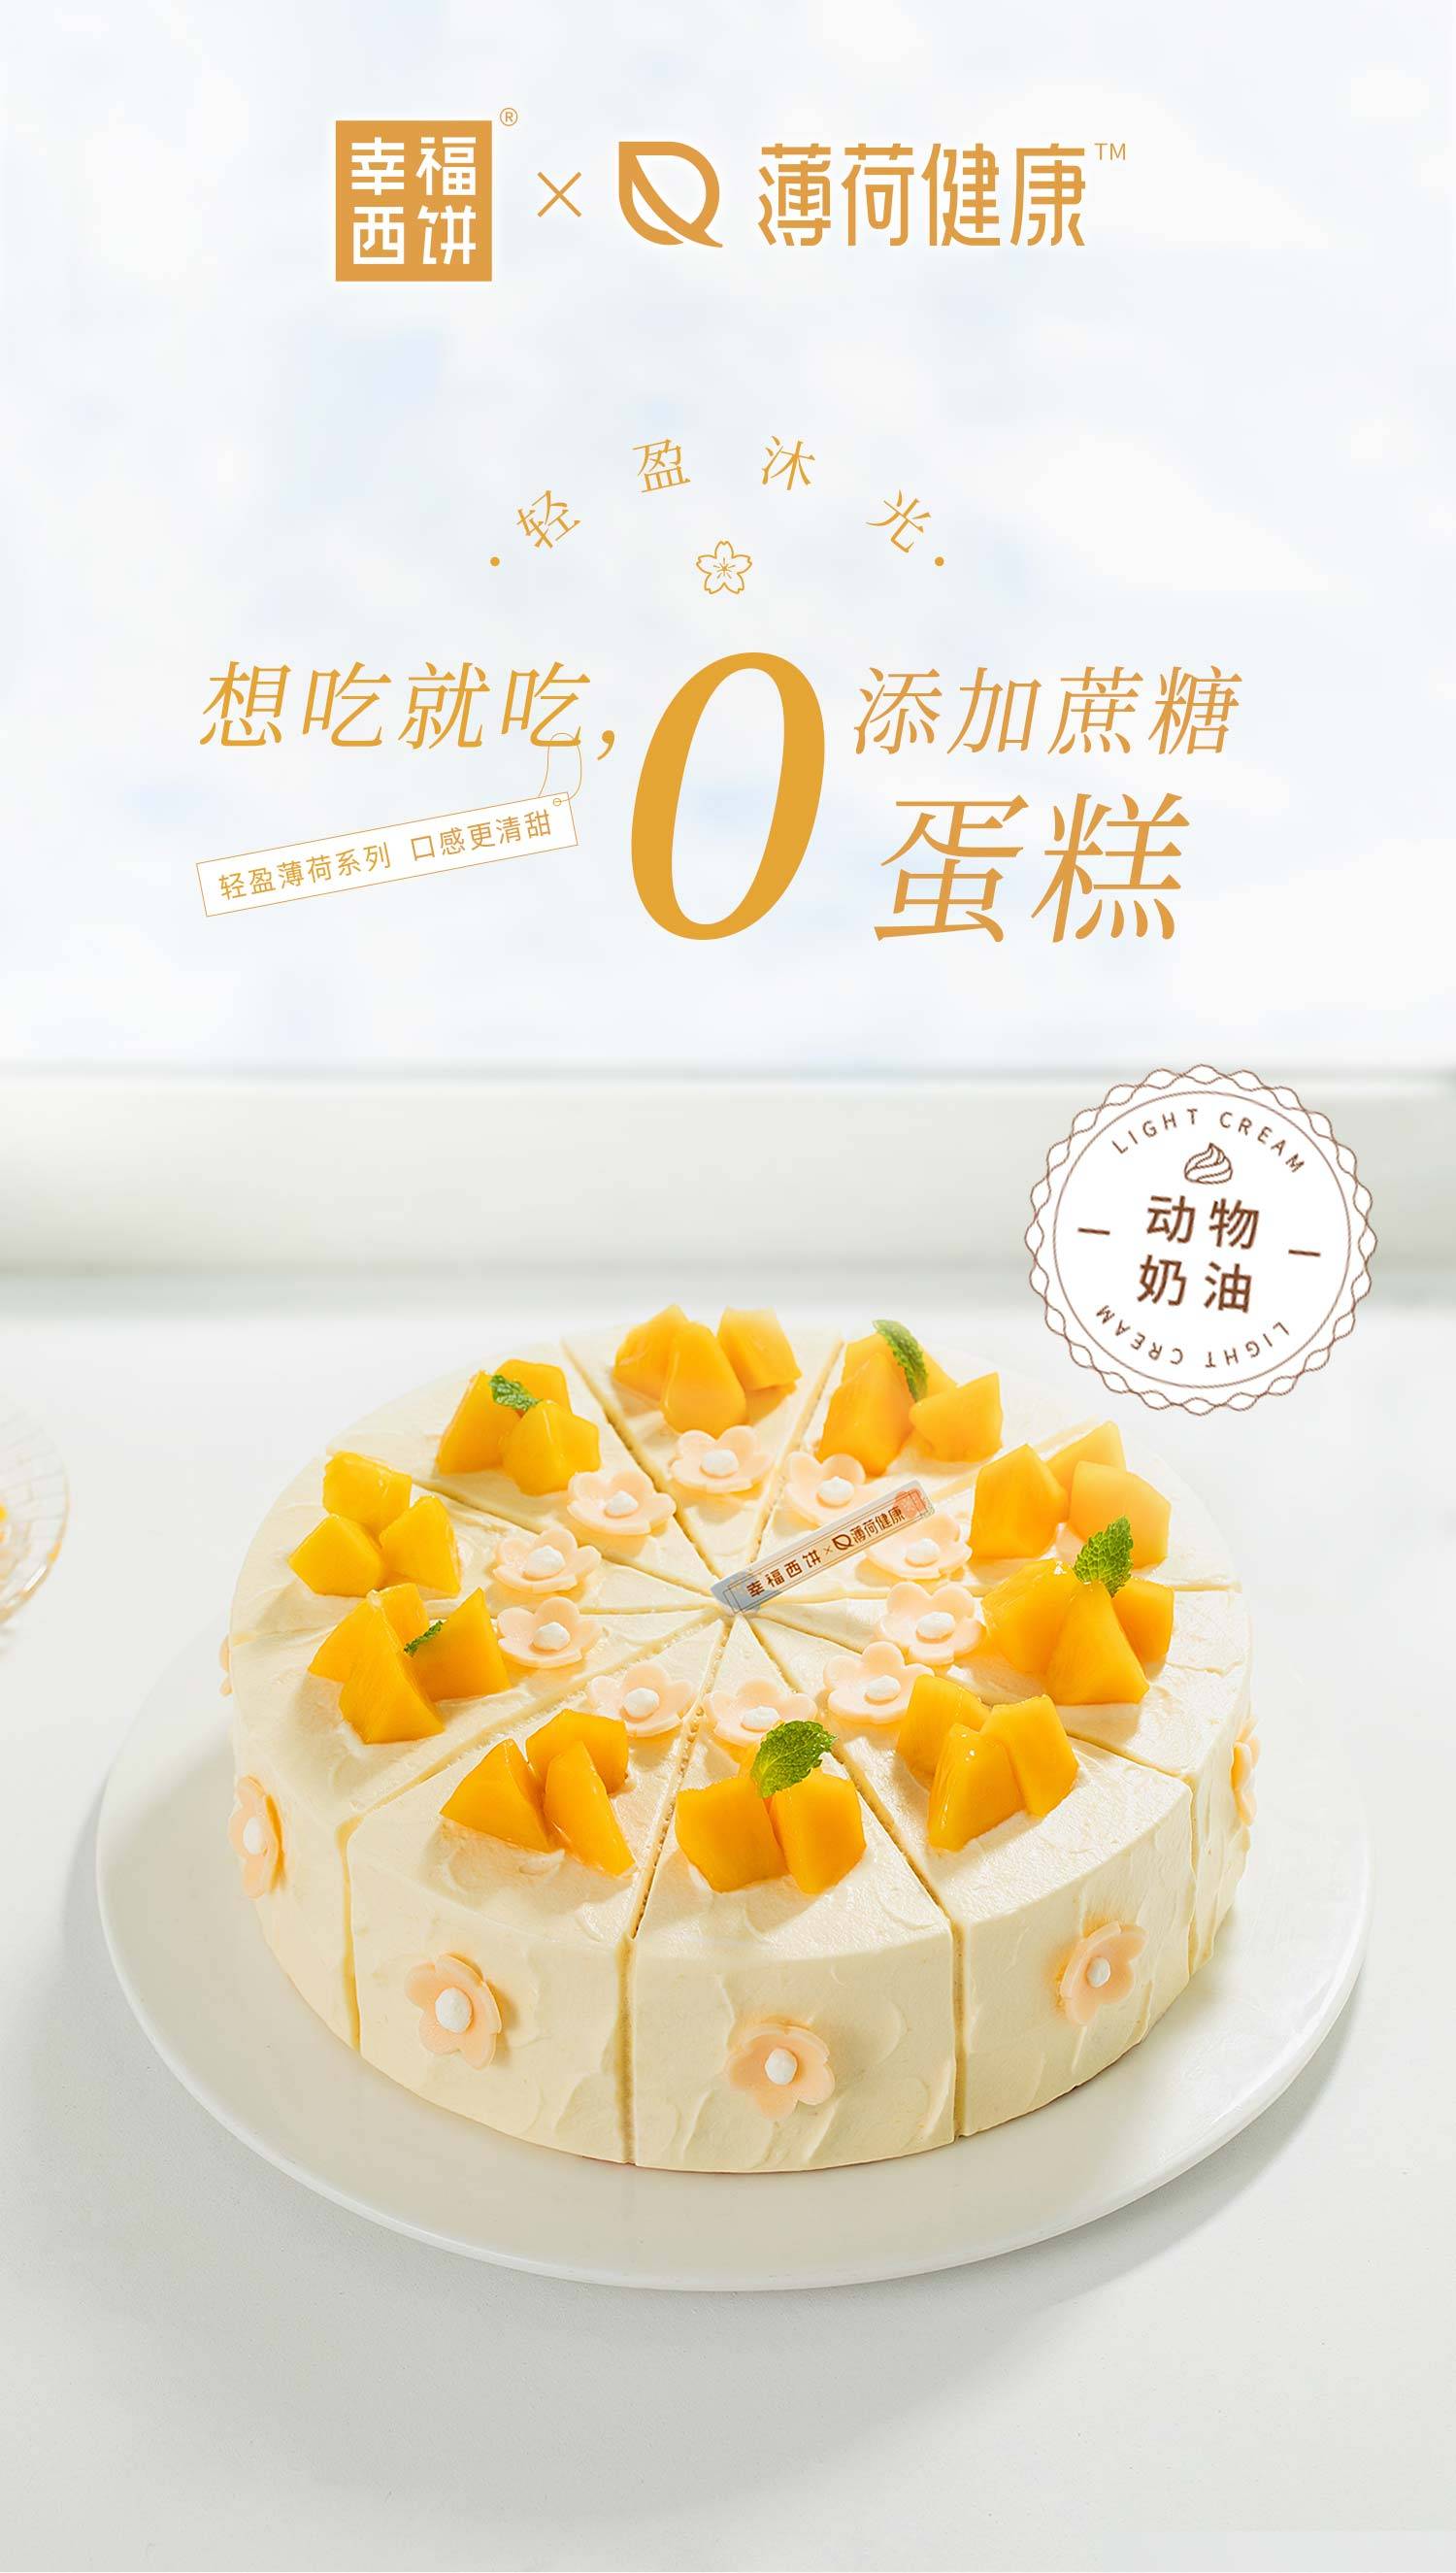 森林小红帽_幸福西饼蛋糕预定_加盟幸福西饼_深圳幸福西饼官方网站